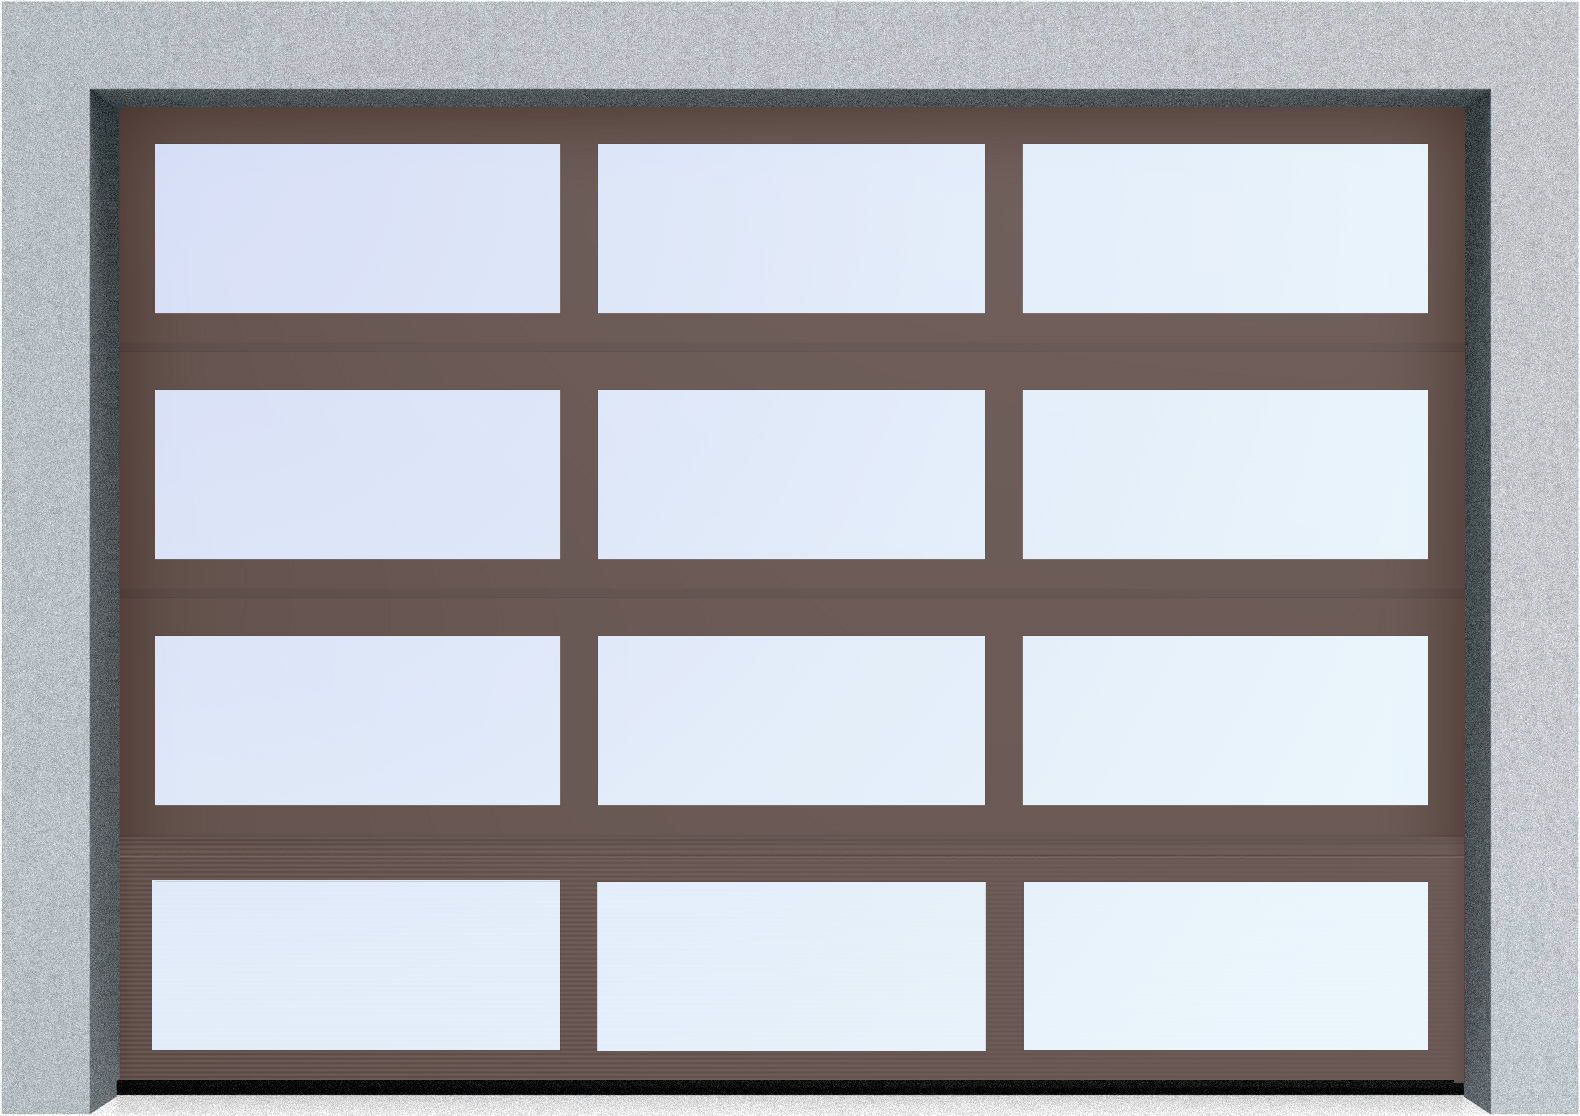  Секционные панорамные ворота серии AluTrend (АЛП) 2625х1875 нижняя панель стандартные цвета, фото 7 